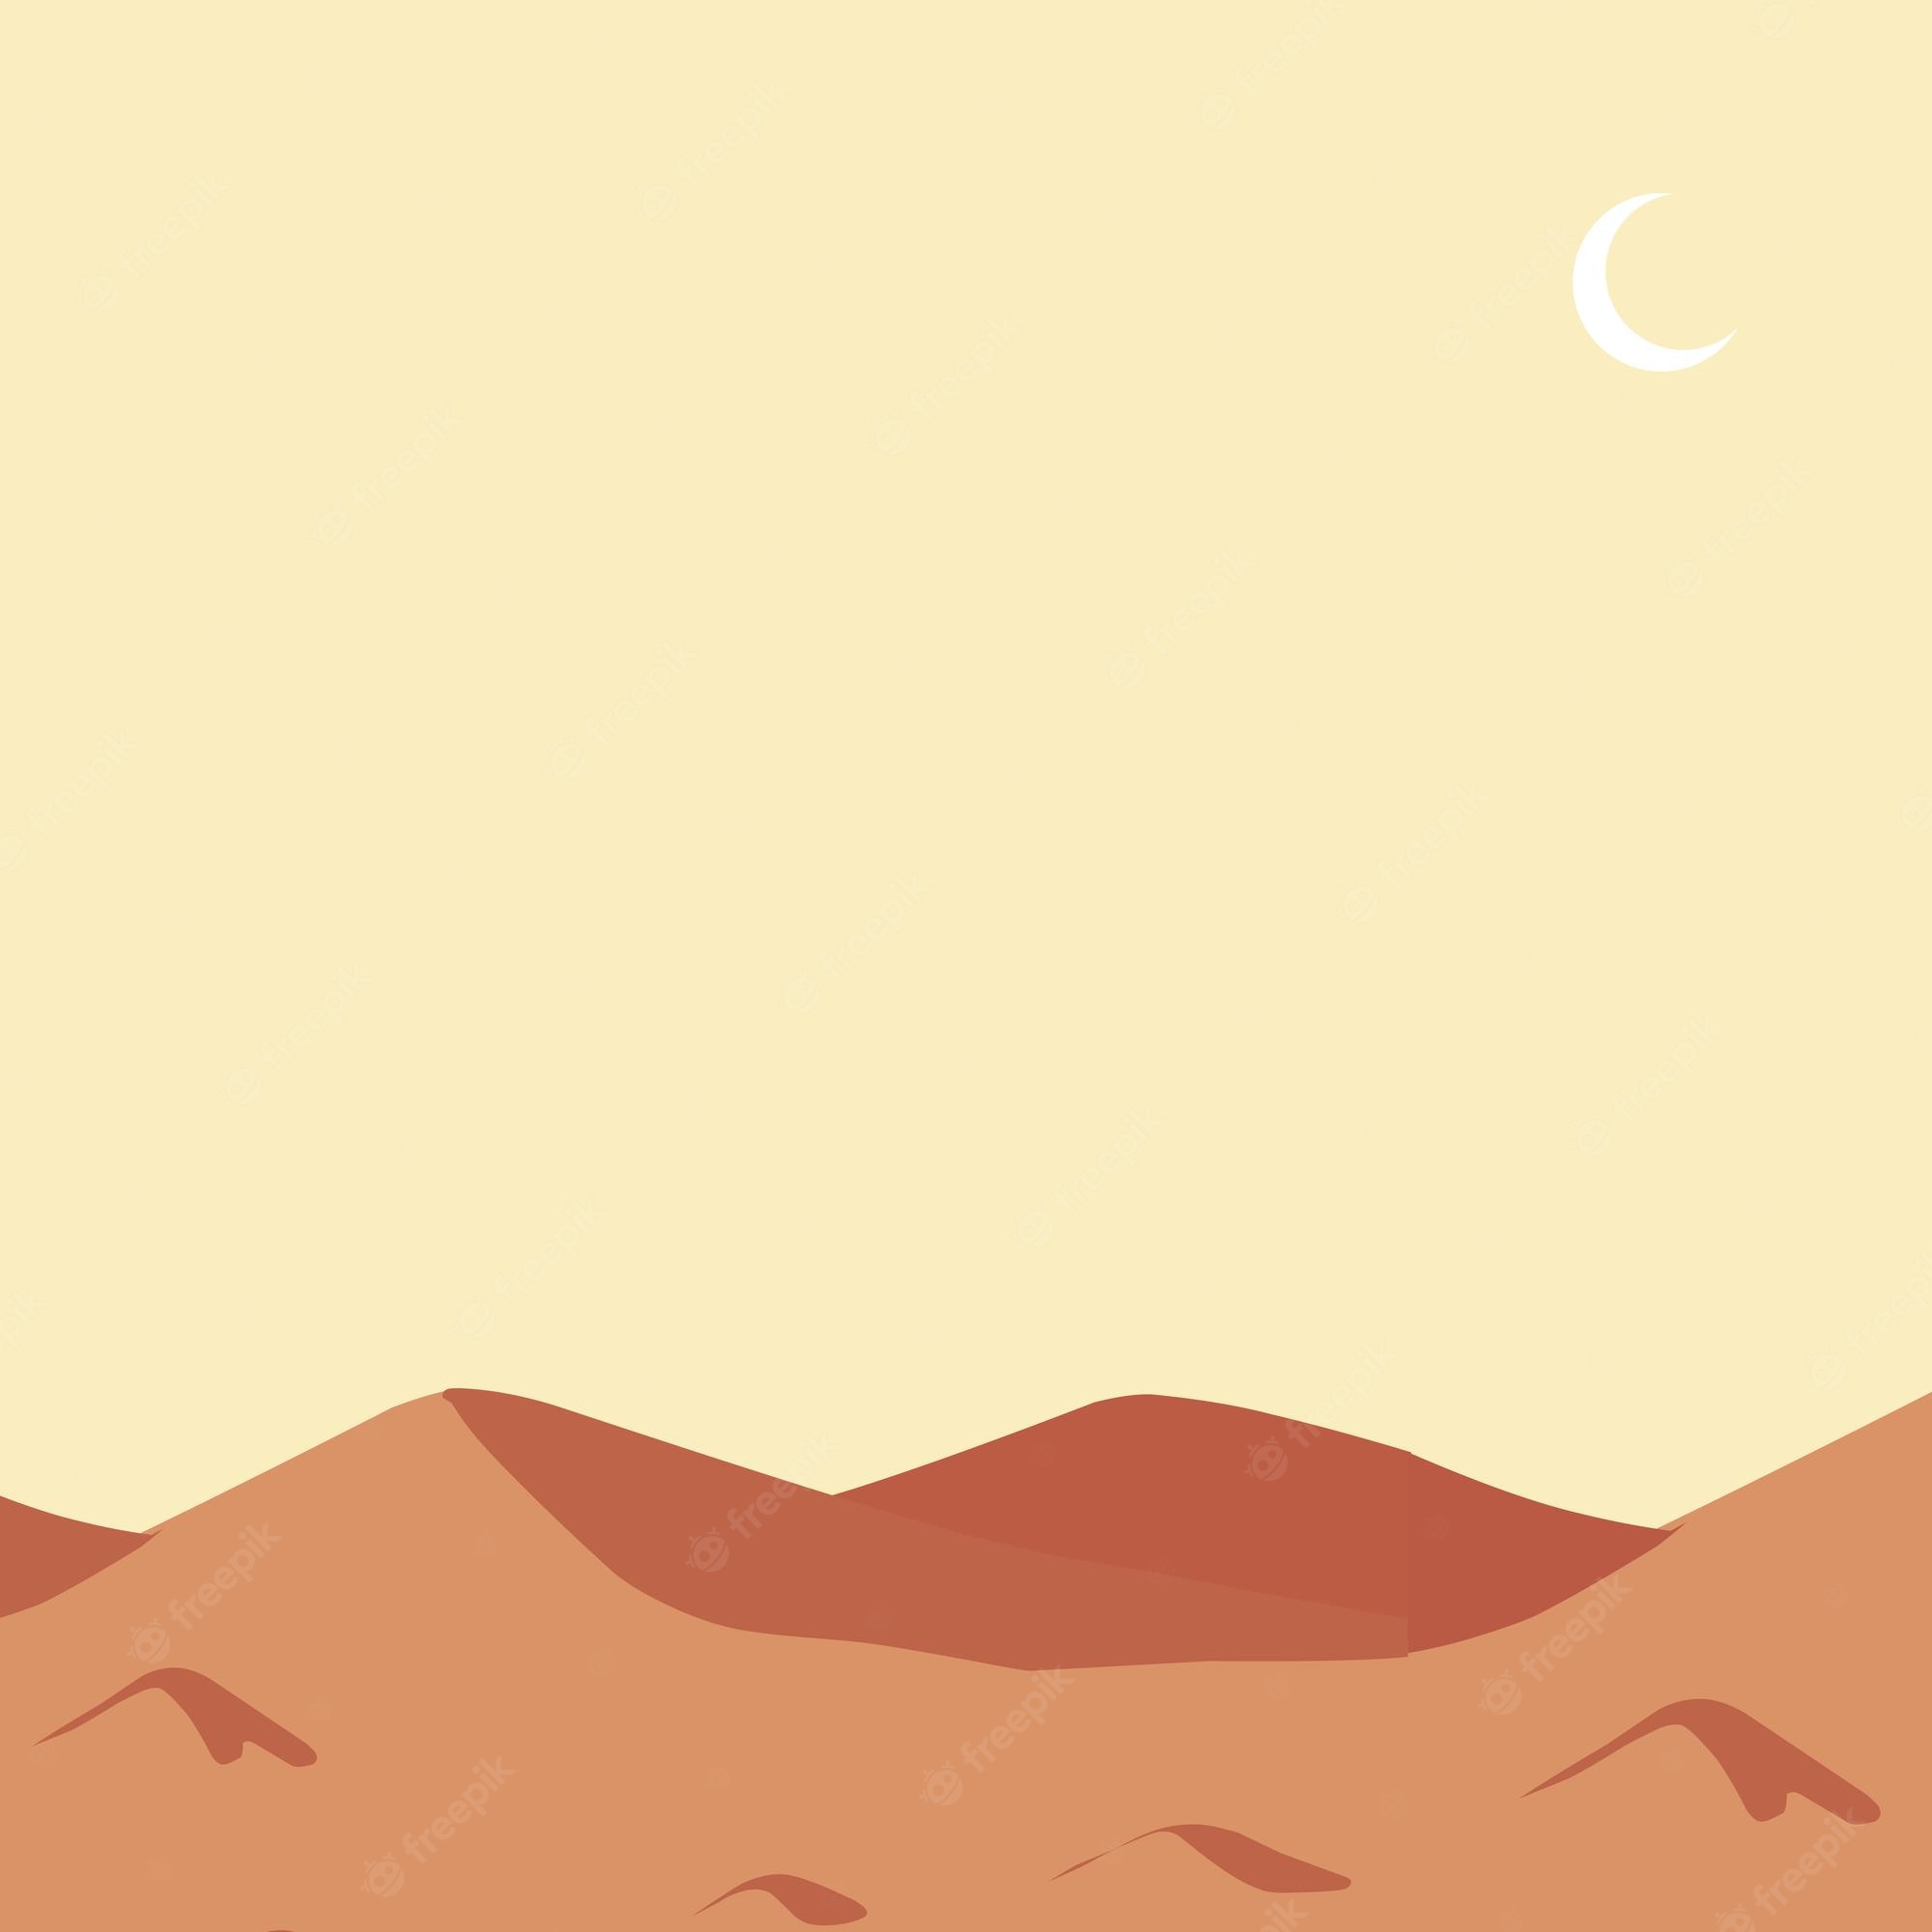 Cartoon desert landscape with a crescent moon - Desert